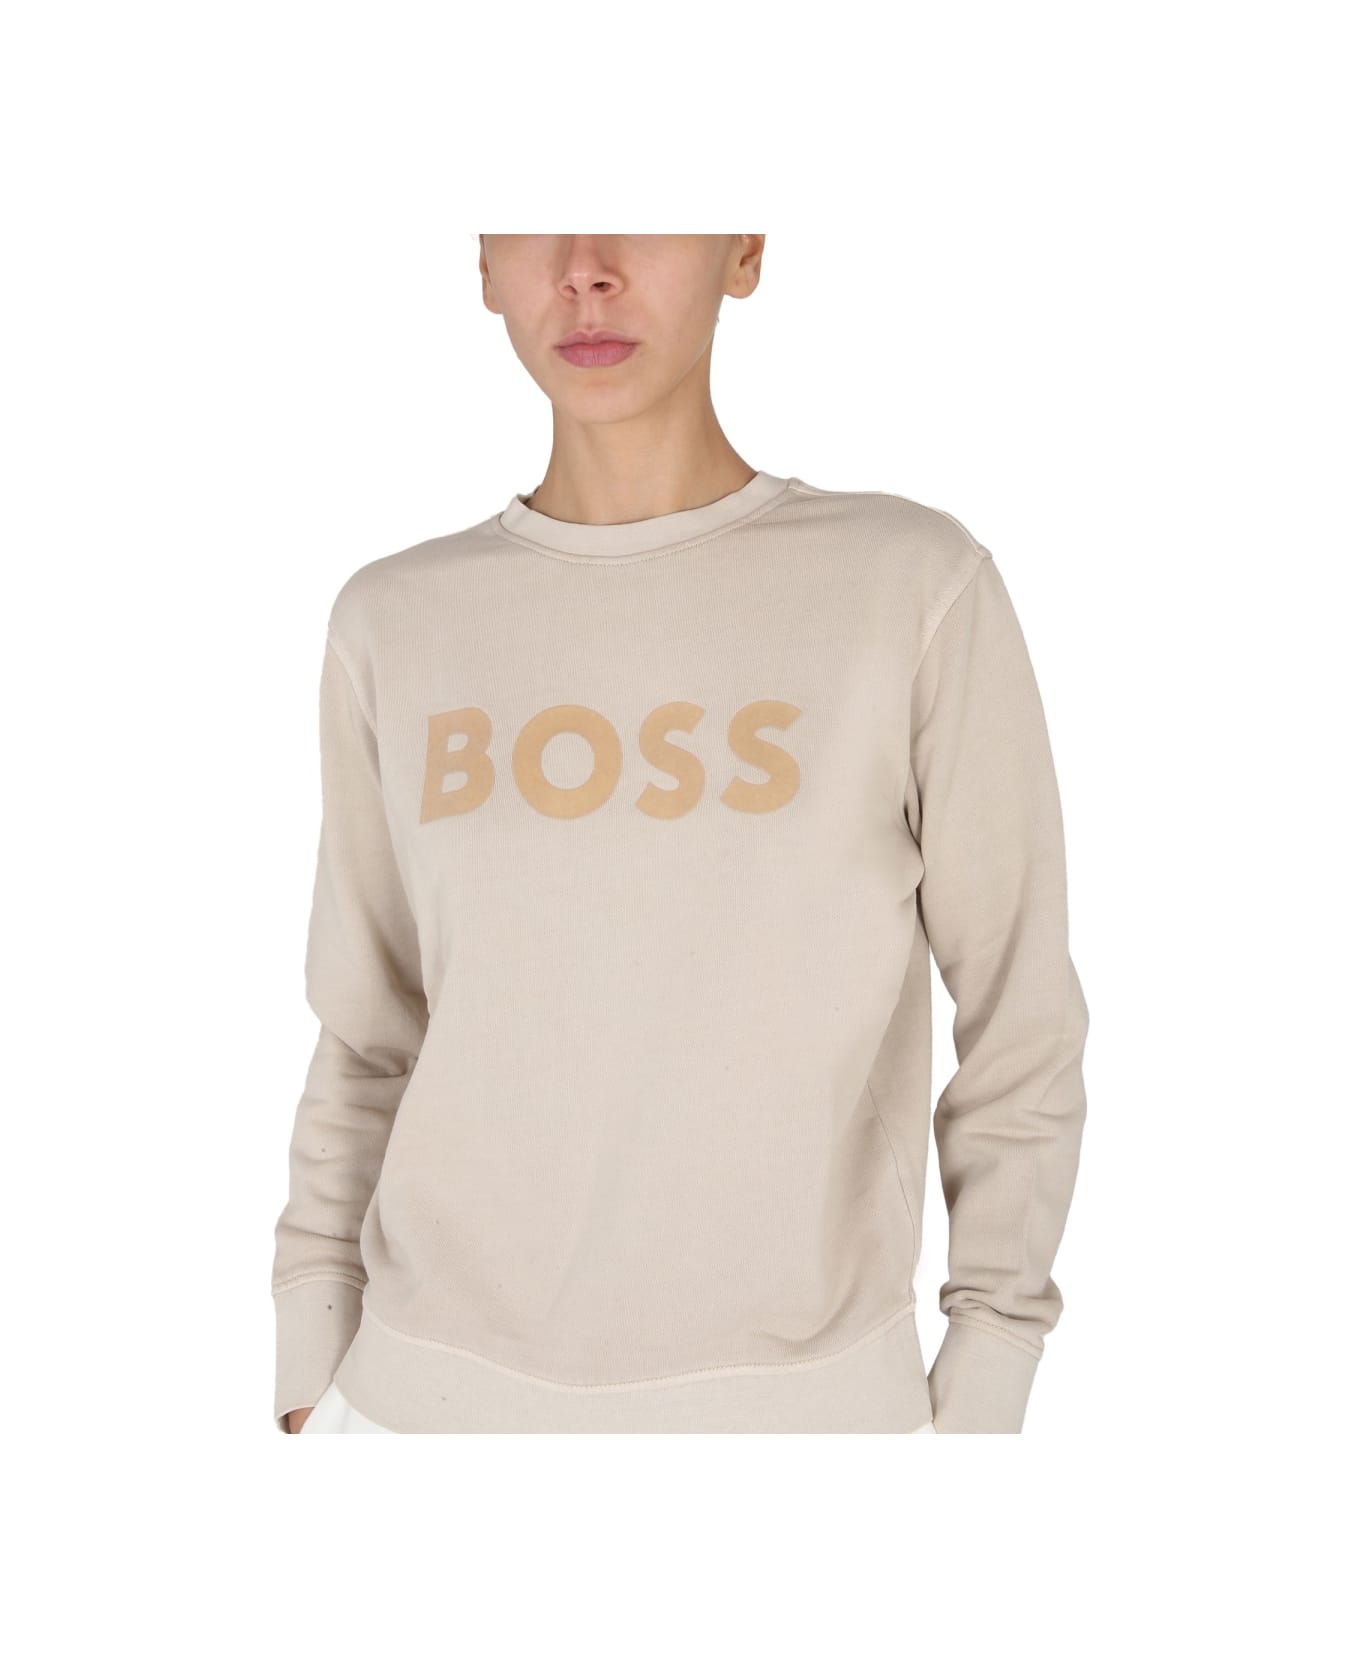 Hugo Boss Crewneck Sweatshirt With Logo - BEIGE